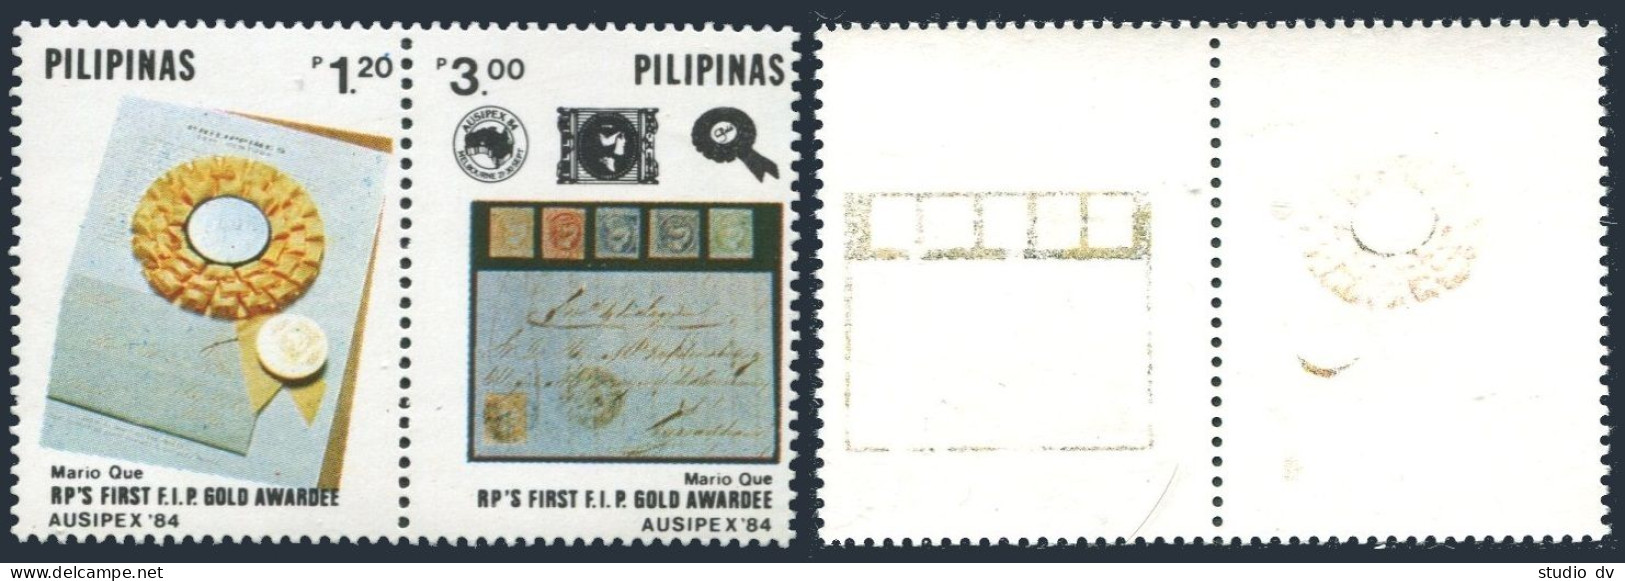 Philippines 1714-1715a Pair-offset, MNH. Michel 1627-1628. Philatelic Week 1984. - Filippine